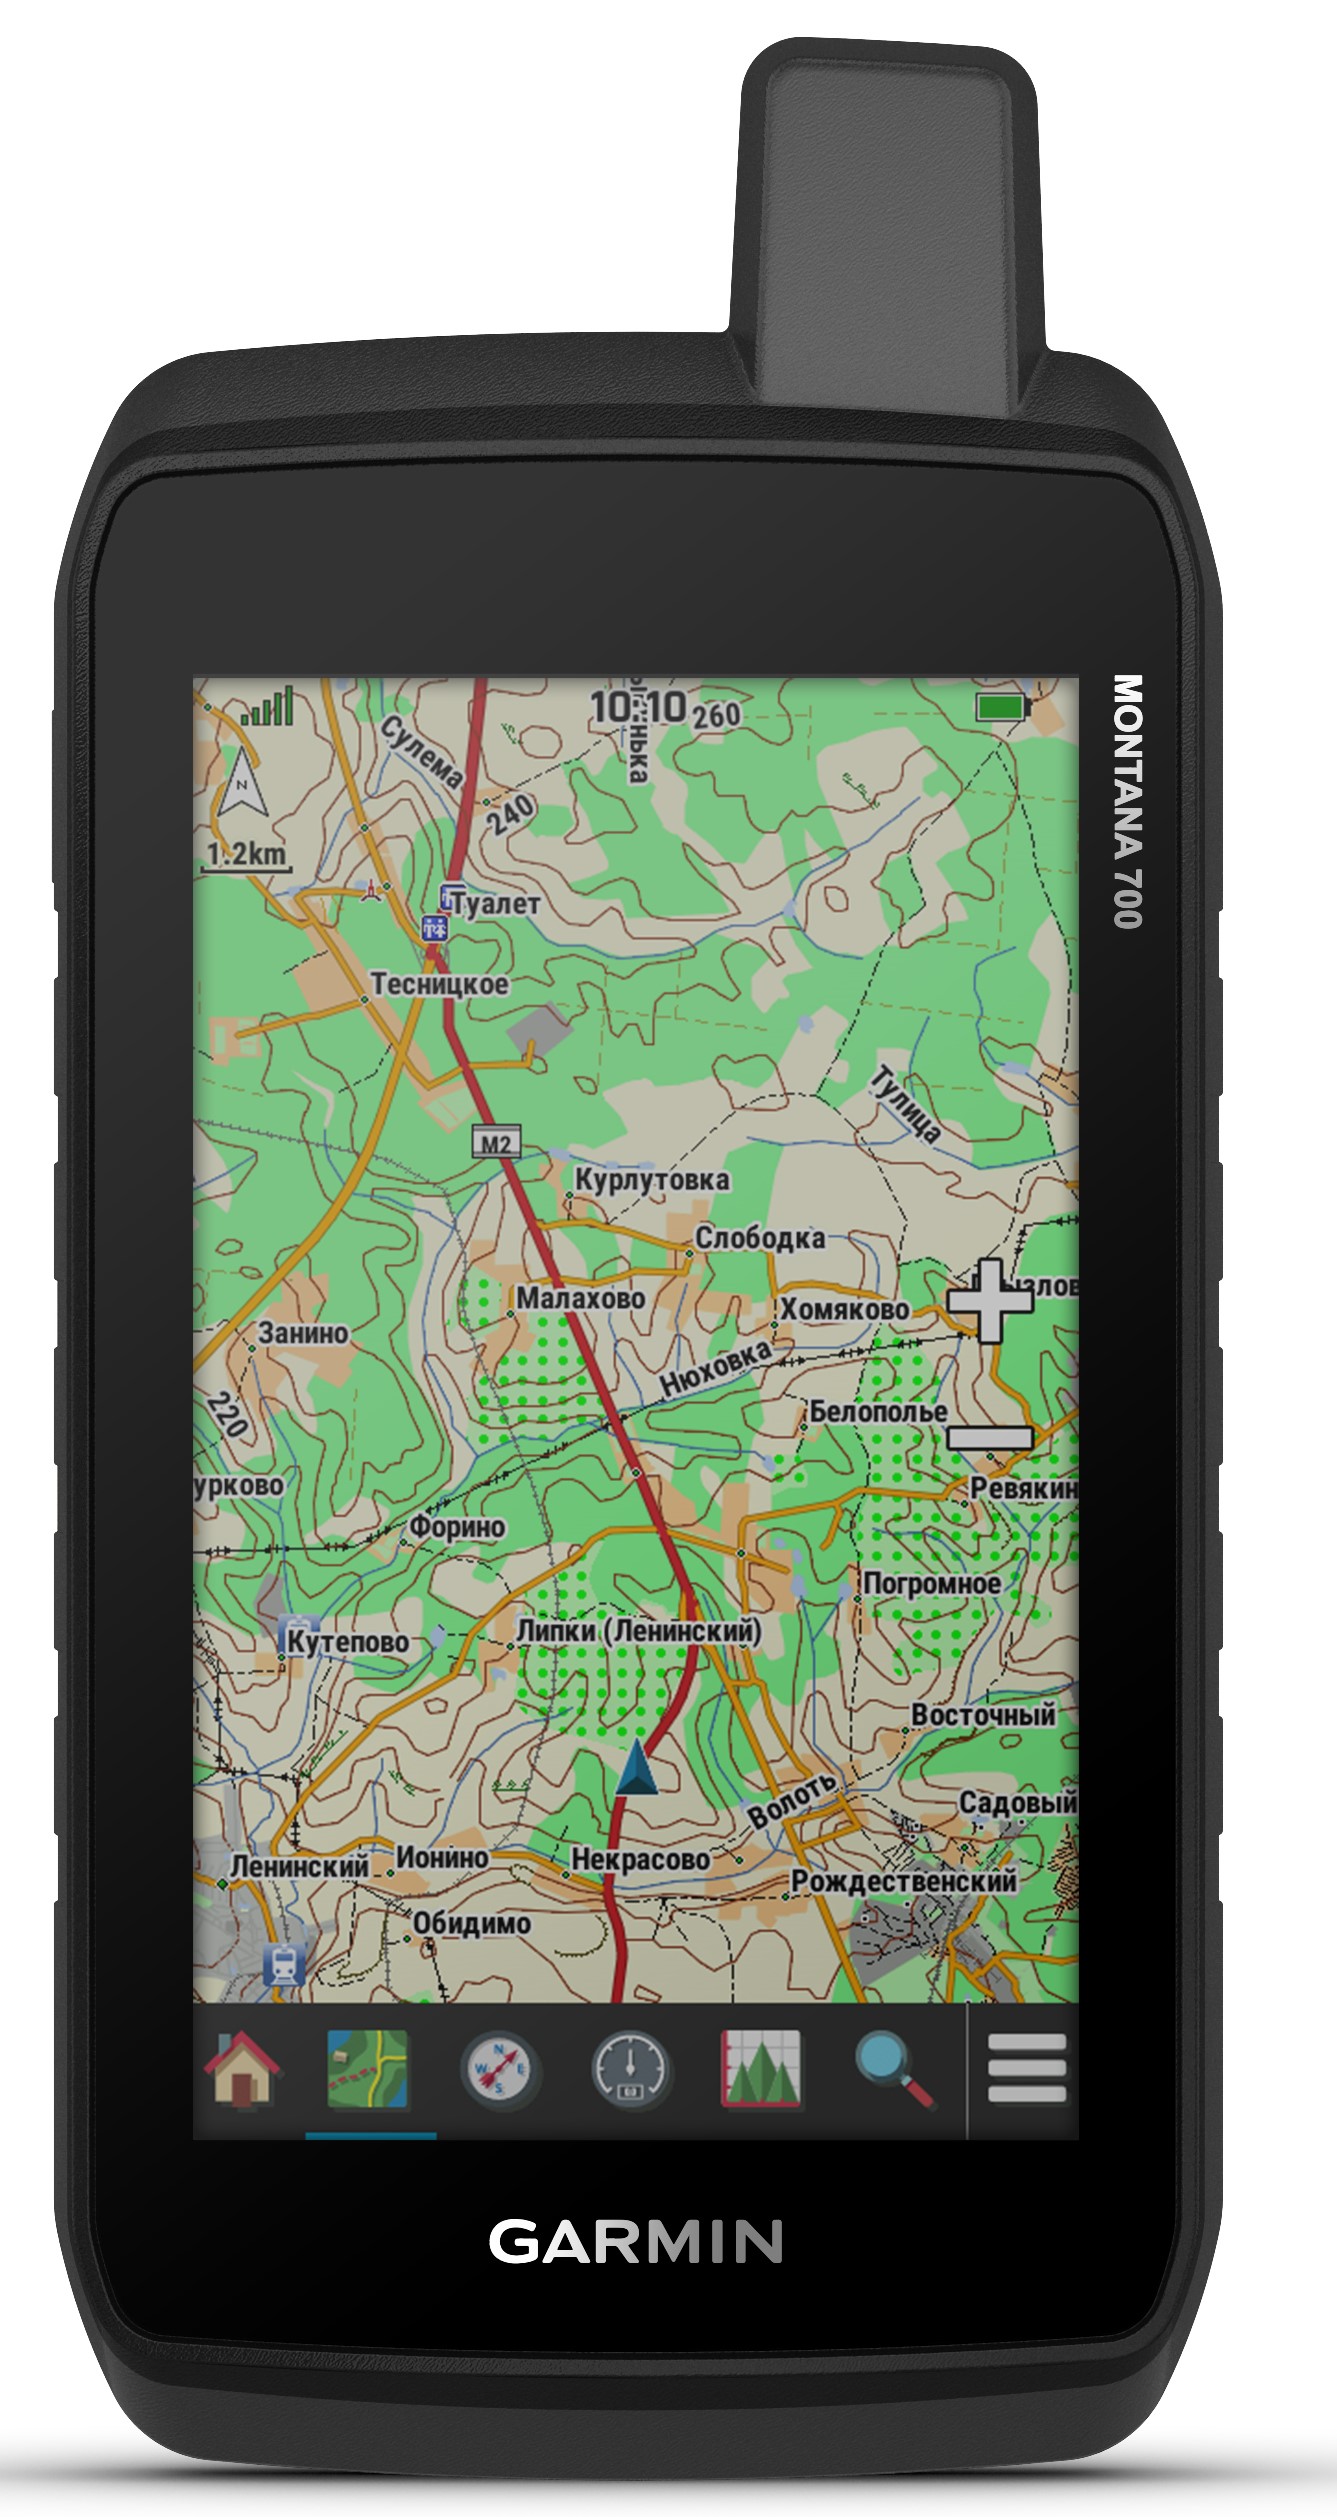 Montana 700, en 750i informatie handleiding - GPS